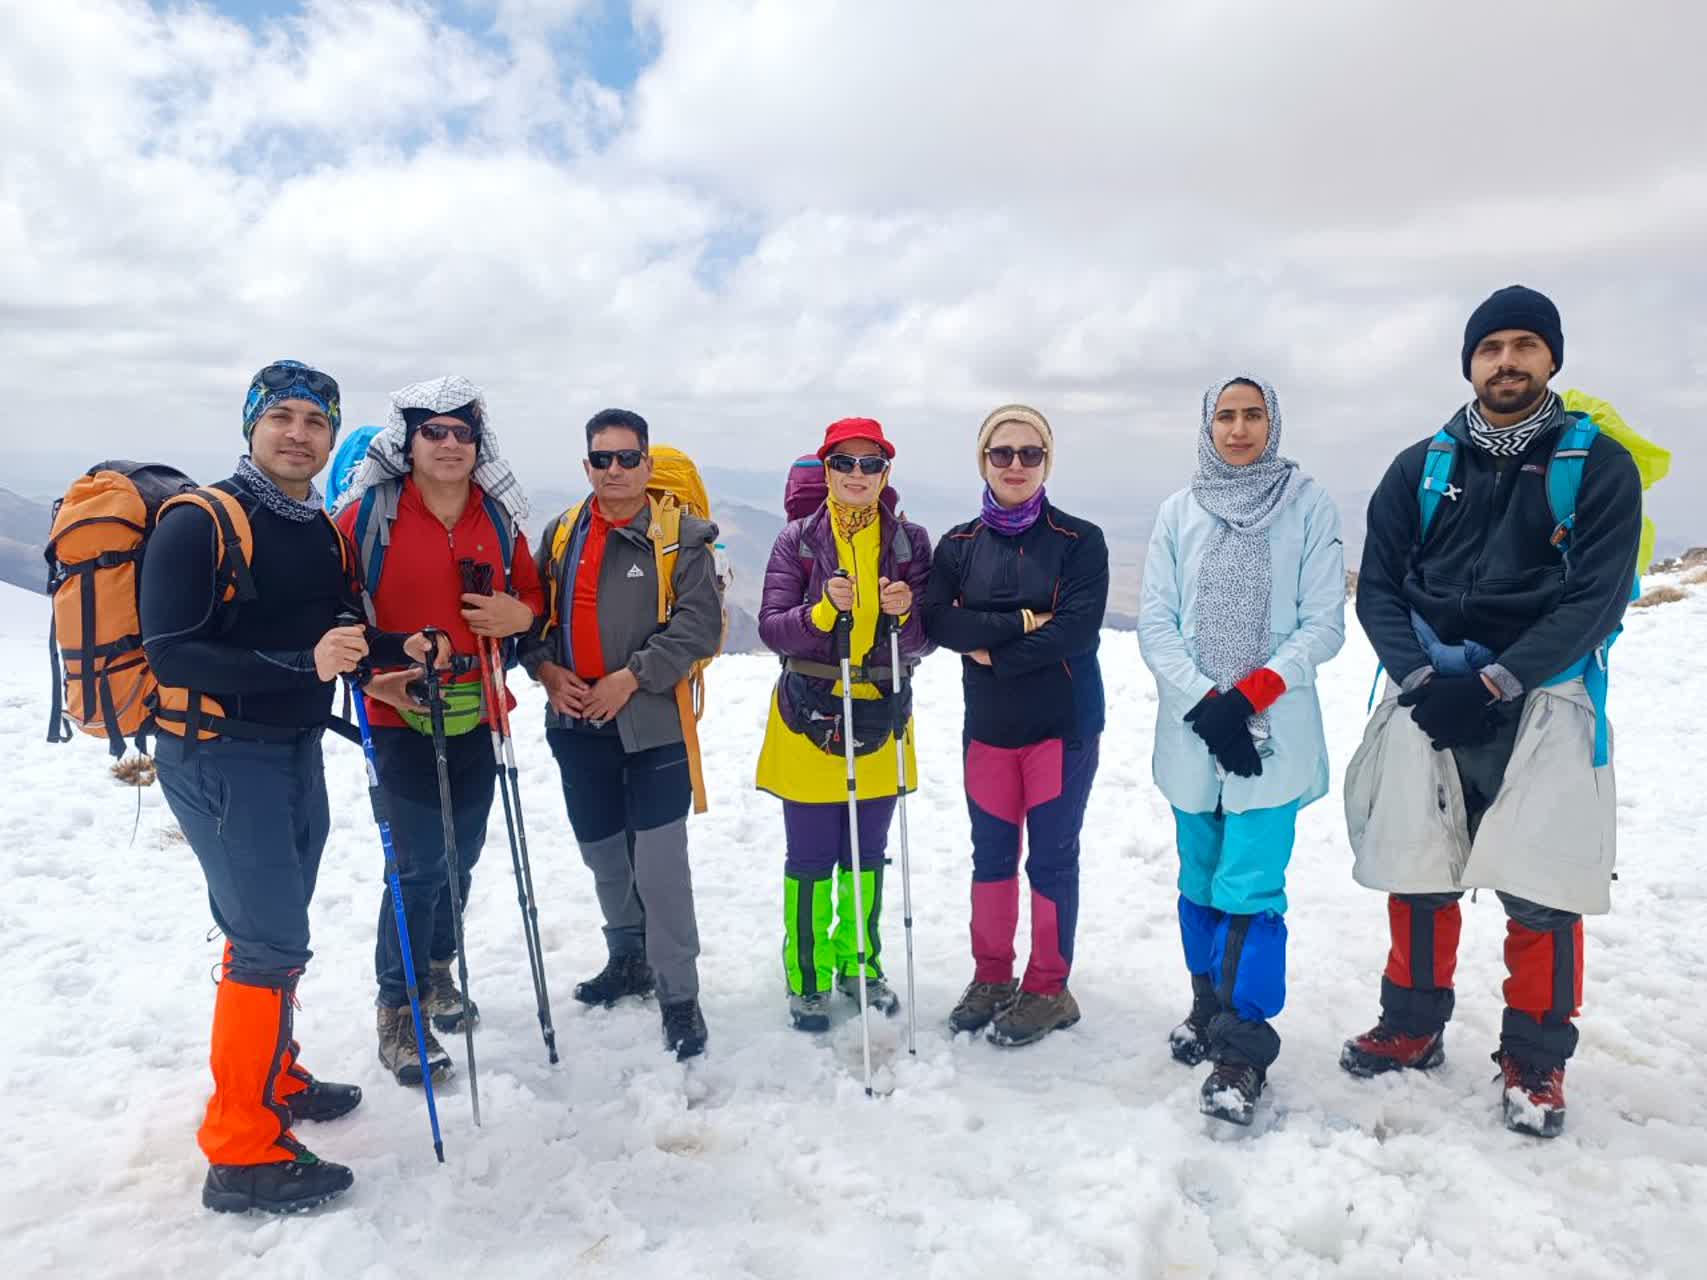 صعود تیم کوهنوردی استان یزد به قله بل بلندترین قله استان فارس به مناسبت هفته معلم